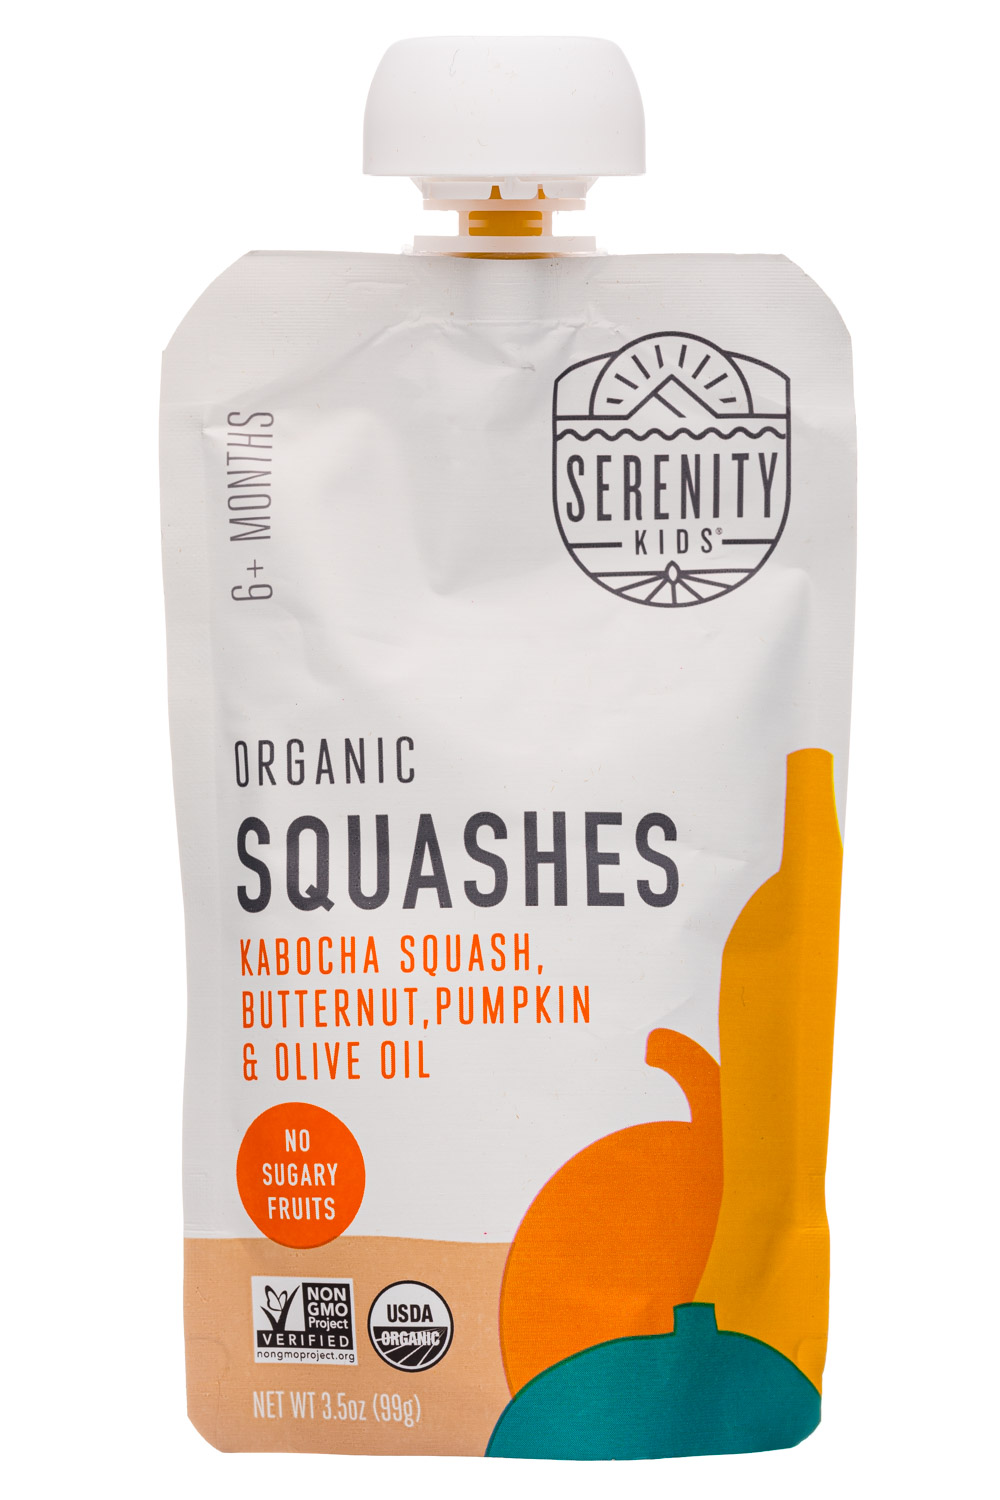 Organic Squashes: Kabocha Squash, Butternut, Pumpkin & Olive Oil